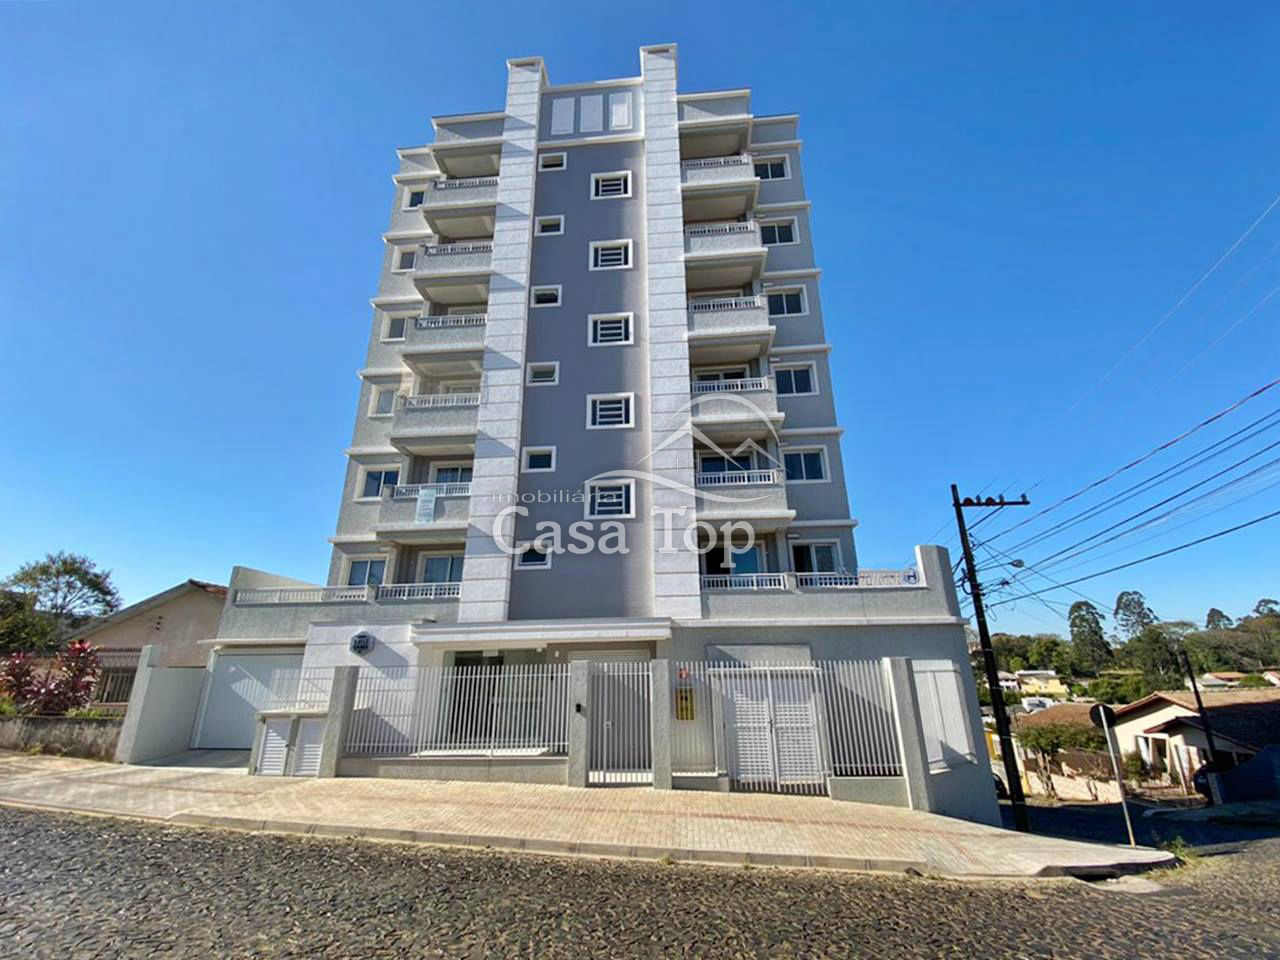 Apartamento semimobiliado à venda Oficinas - Edifício Luiz Gama